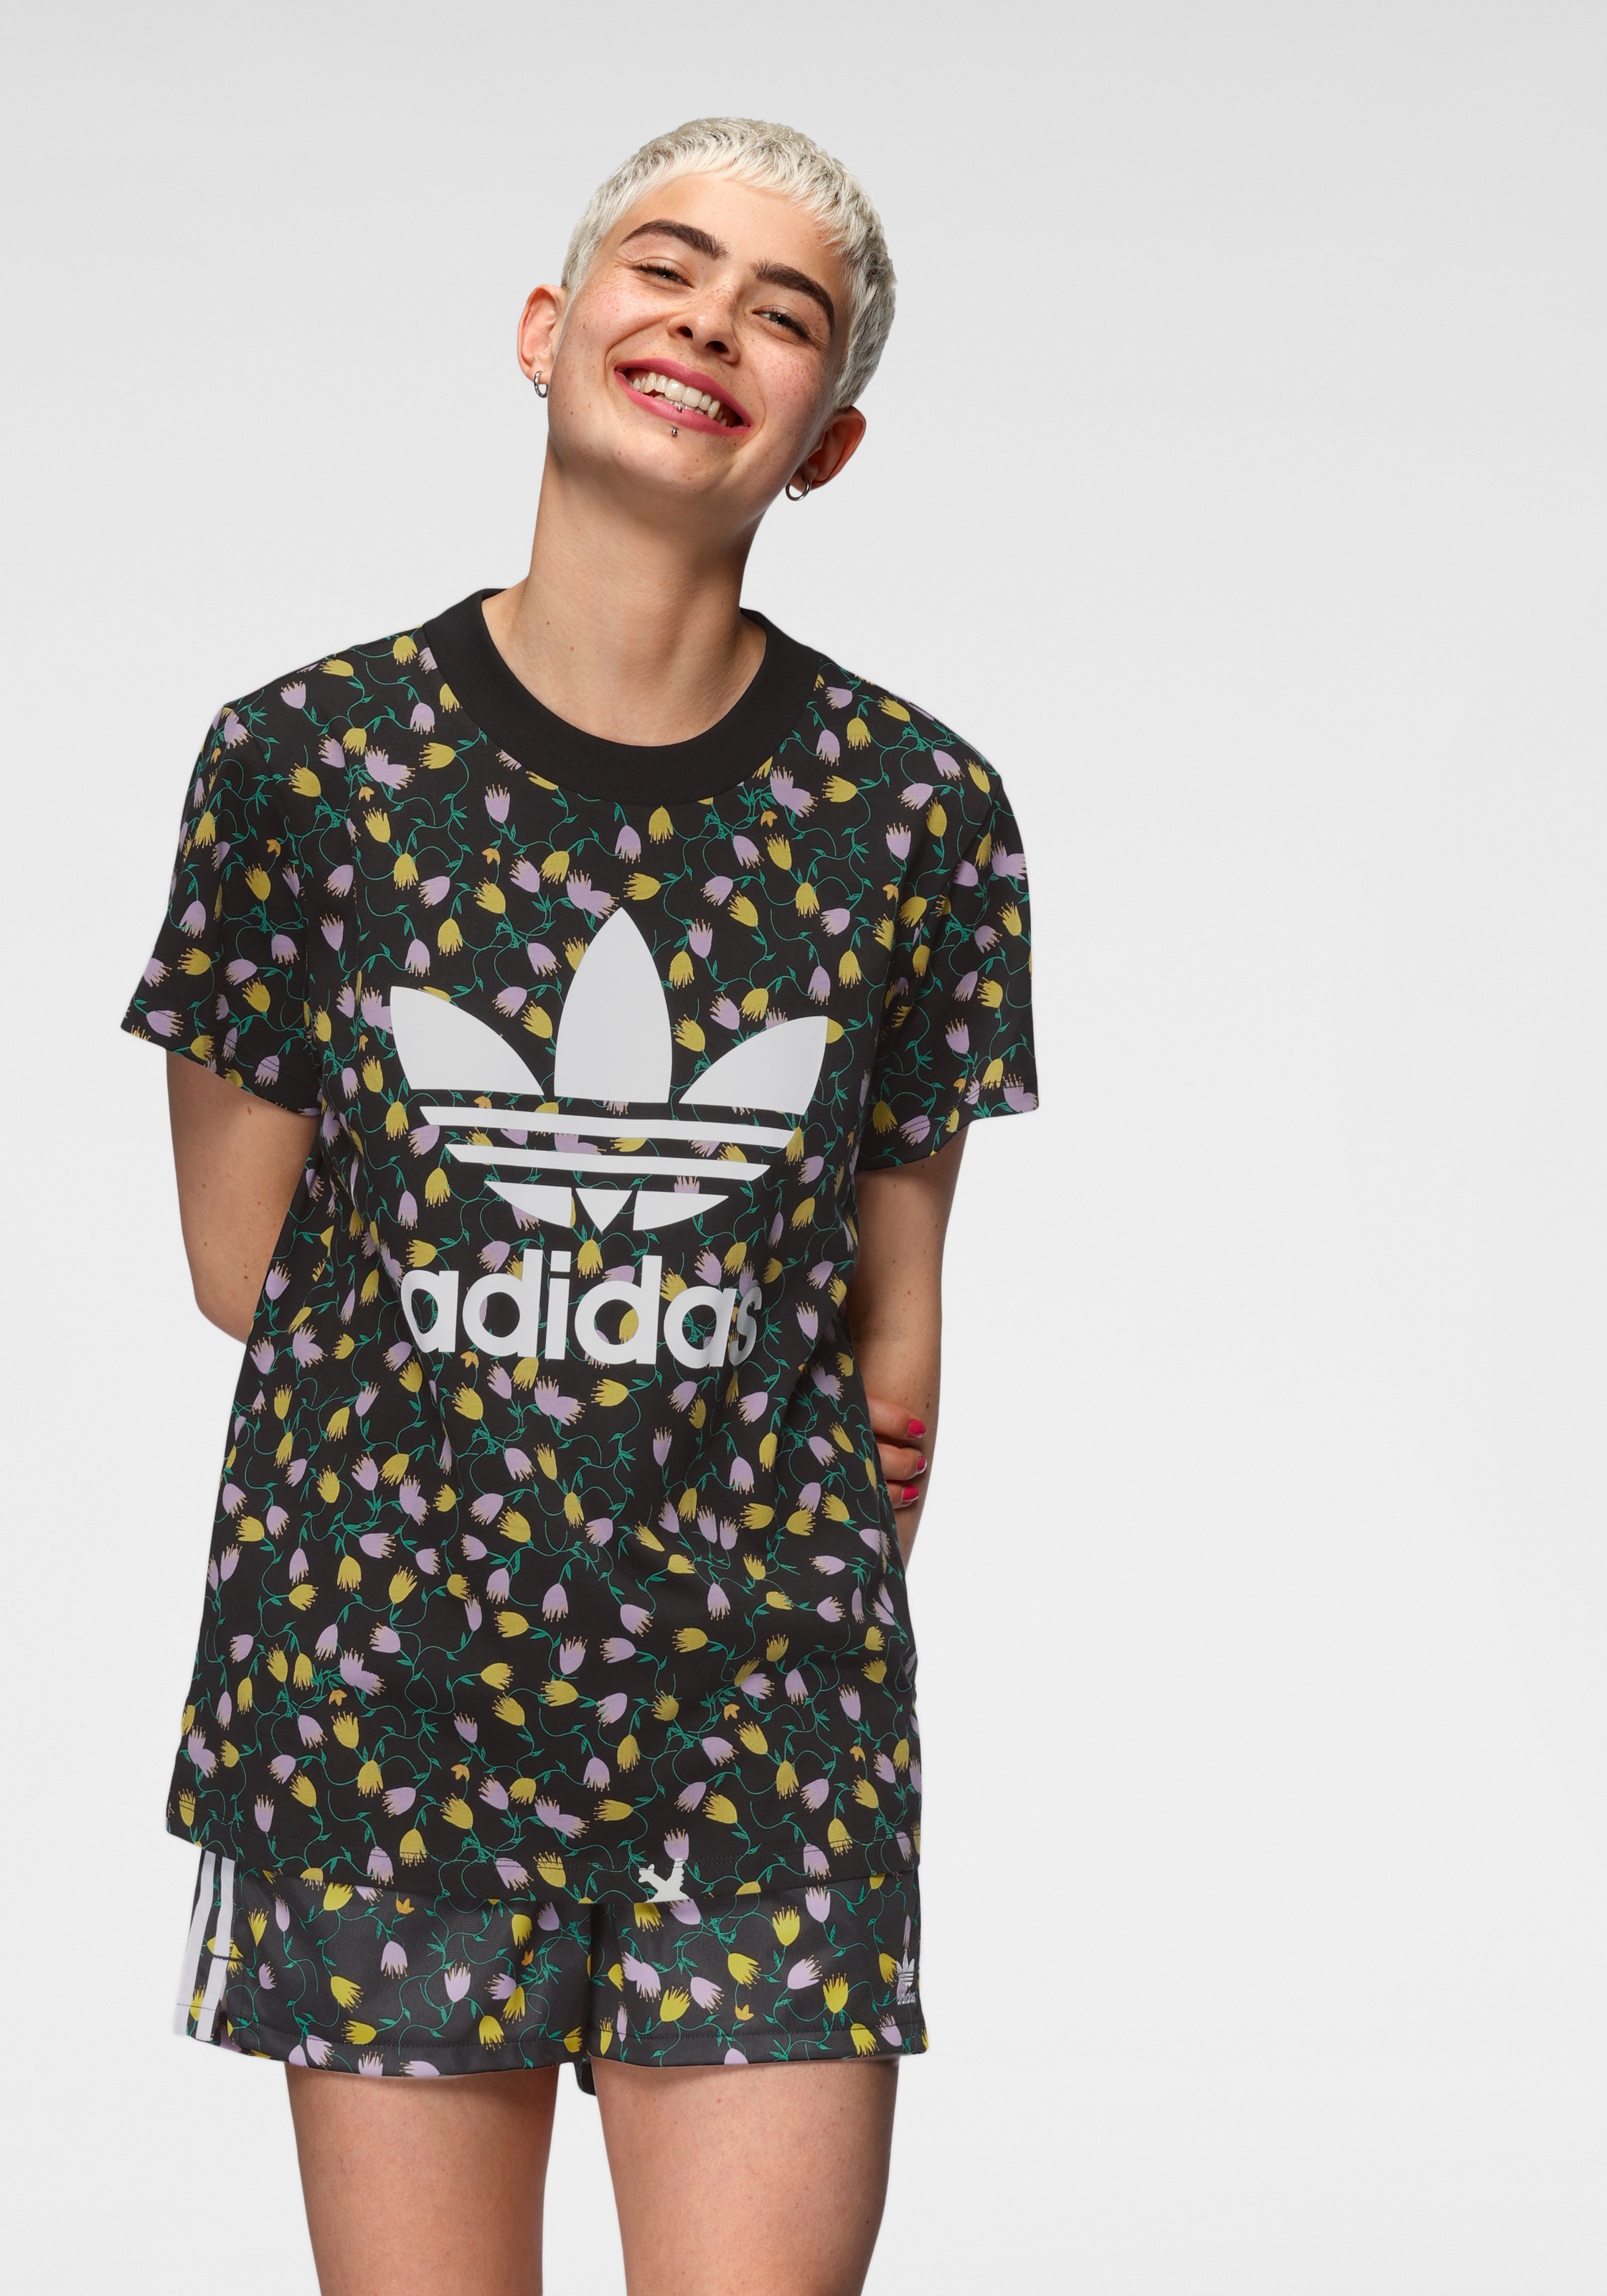 Adidas Originals T Shirt Aop Tee Kaufen Online Bei Otto